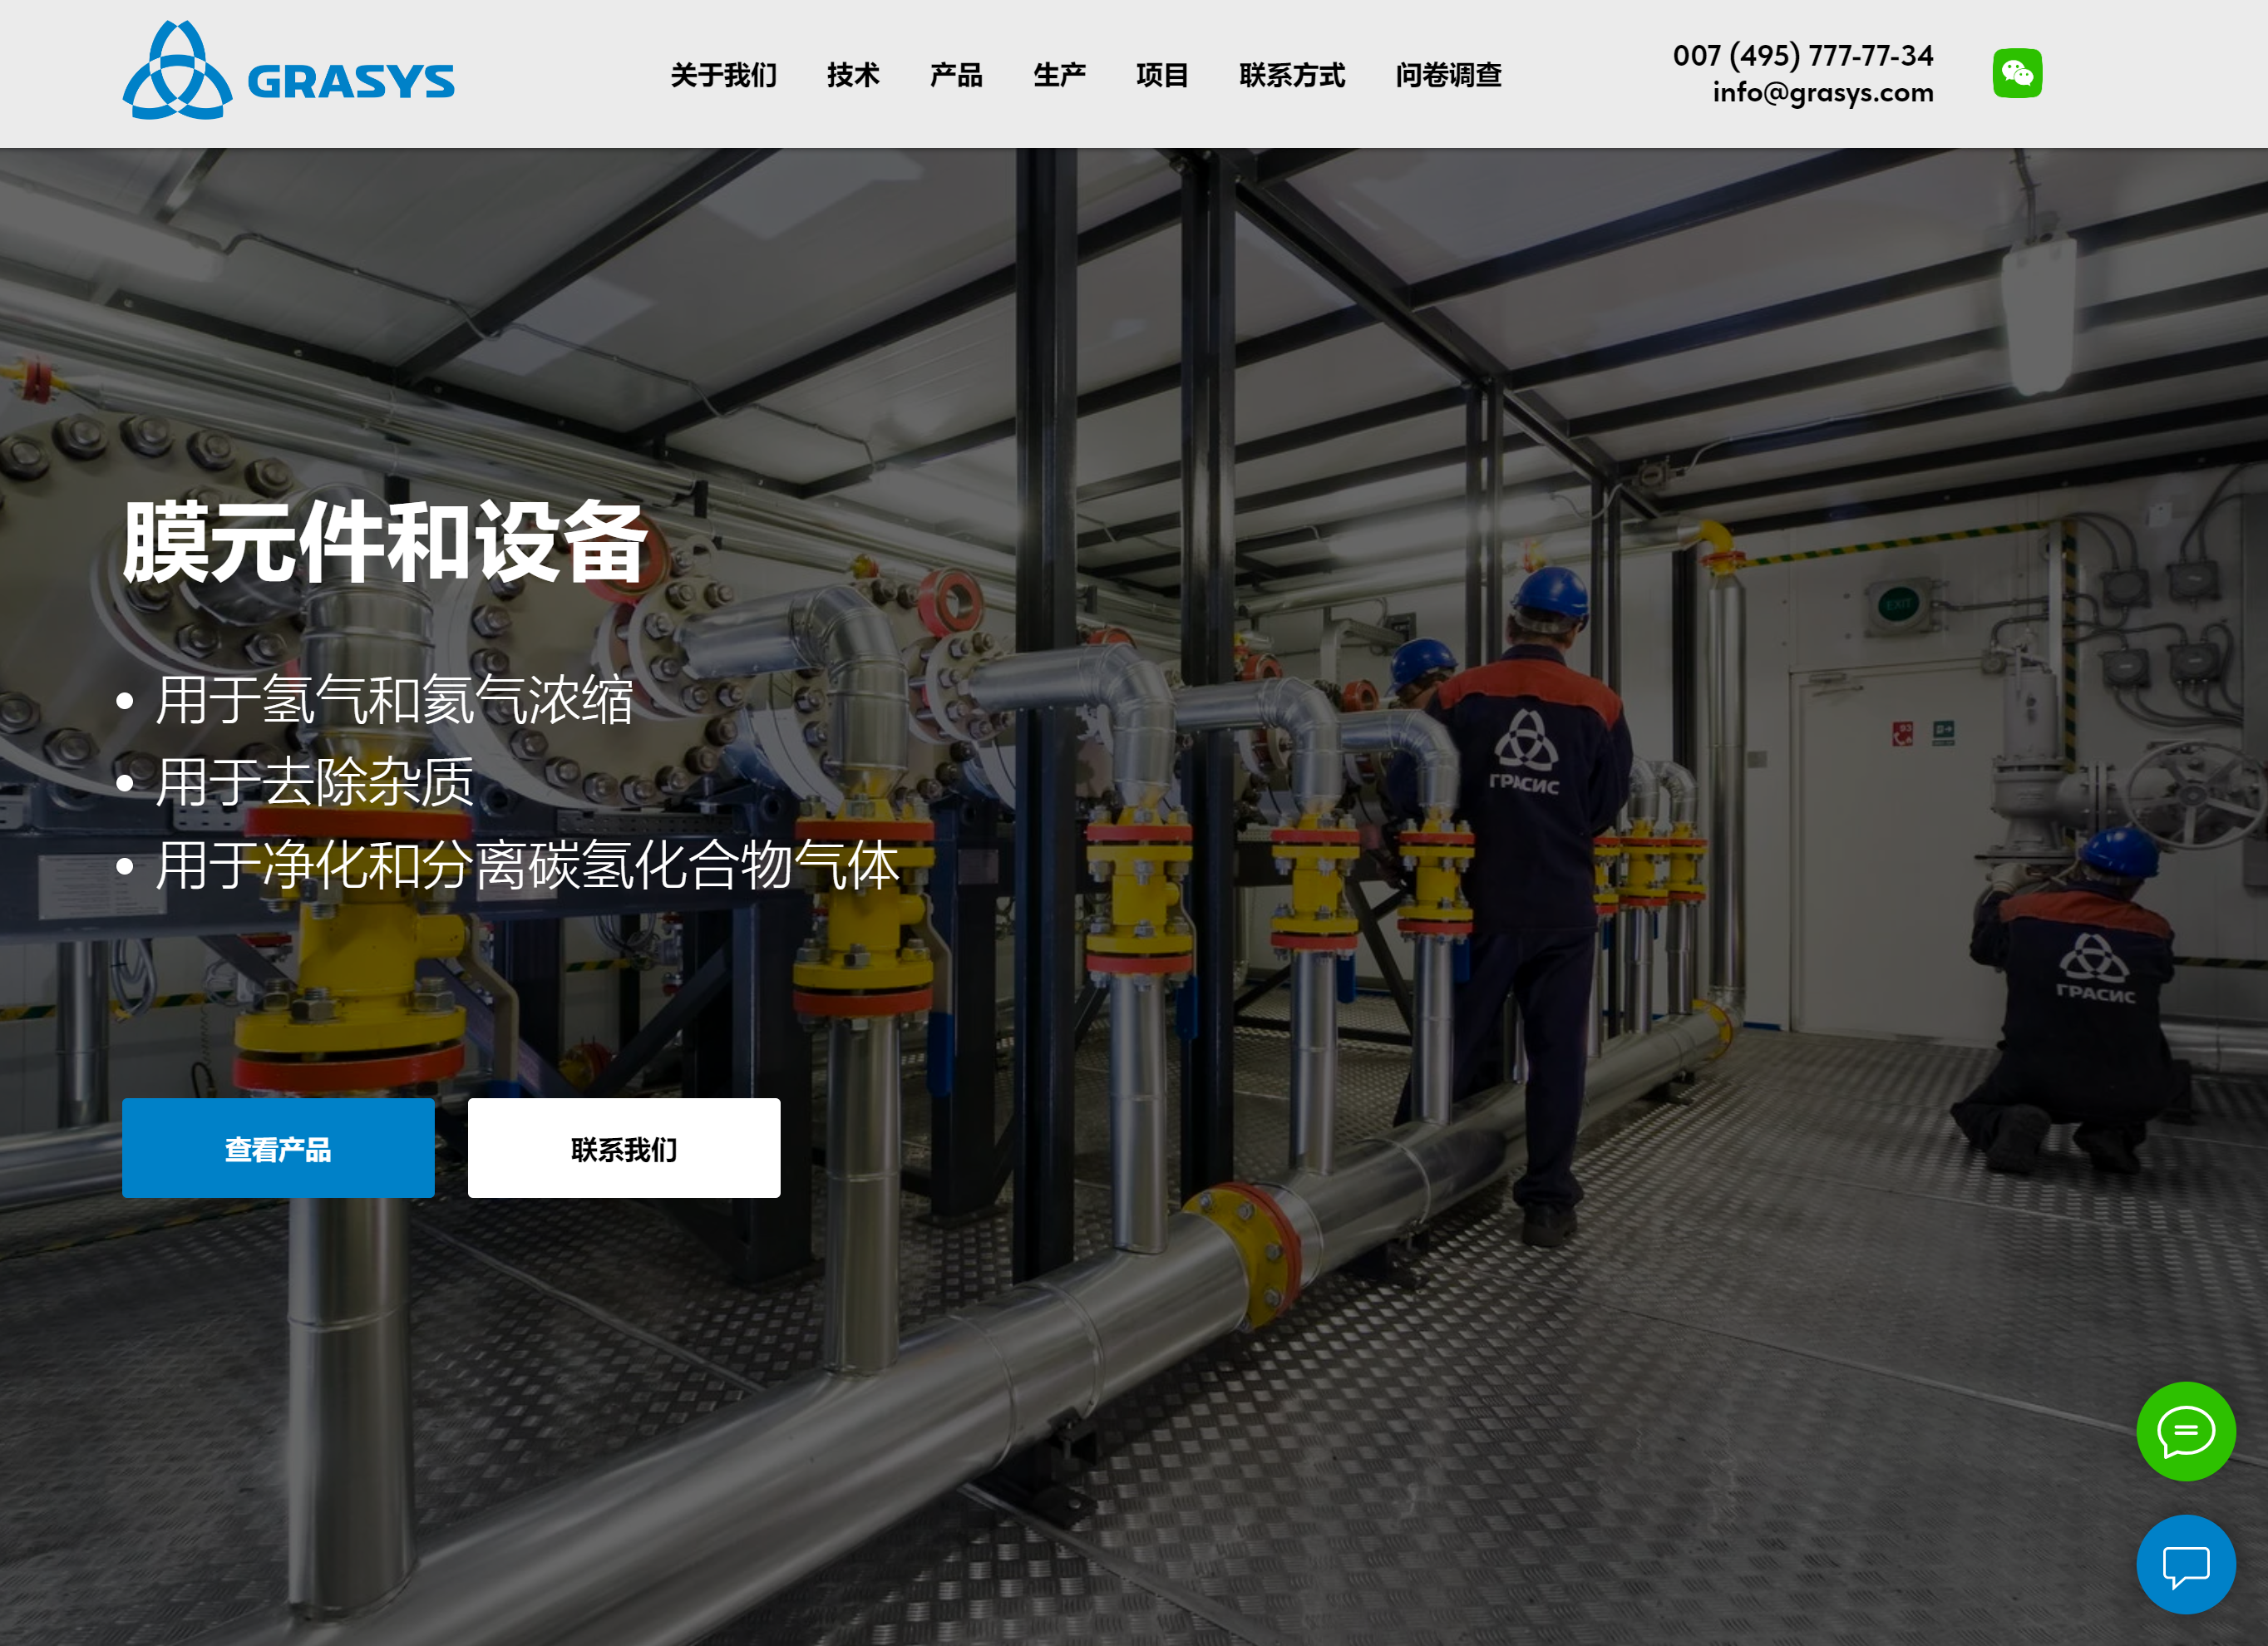 Разработан сайт НПК "Грасис" на китайском языке!